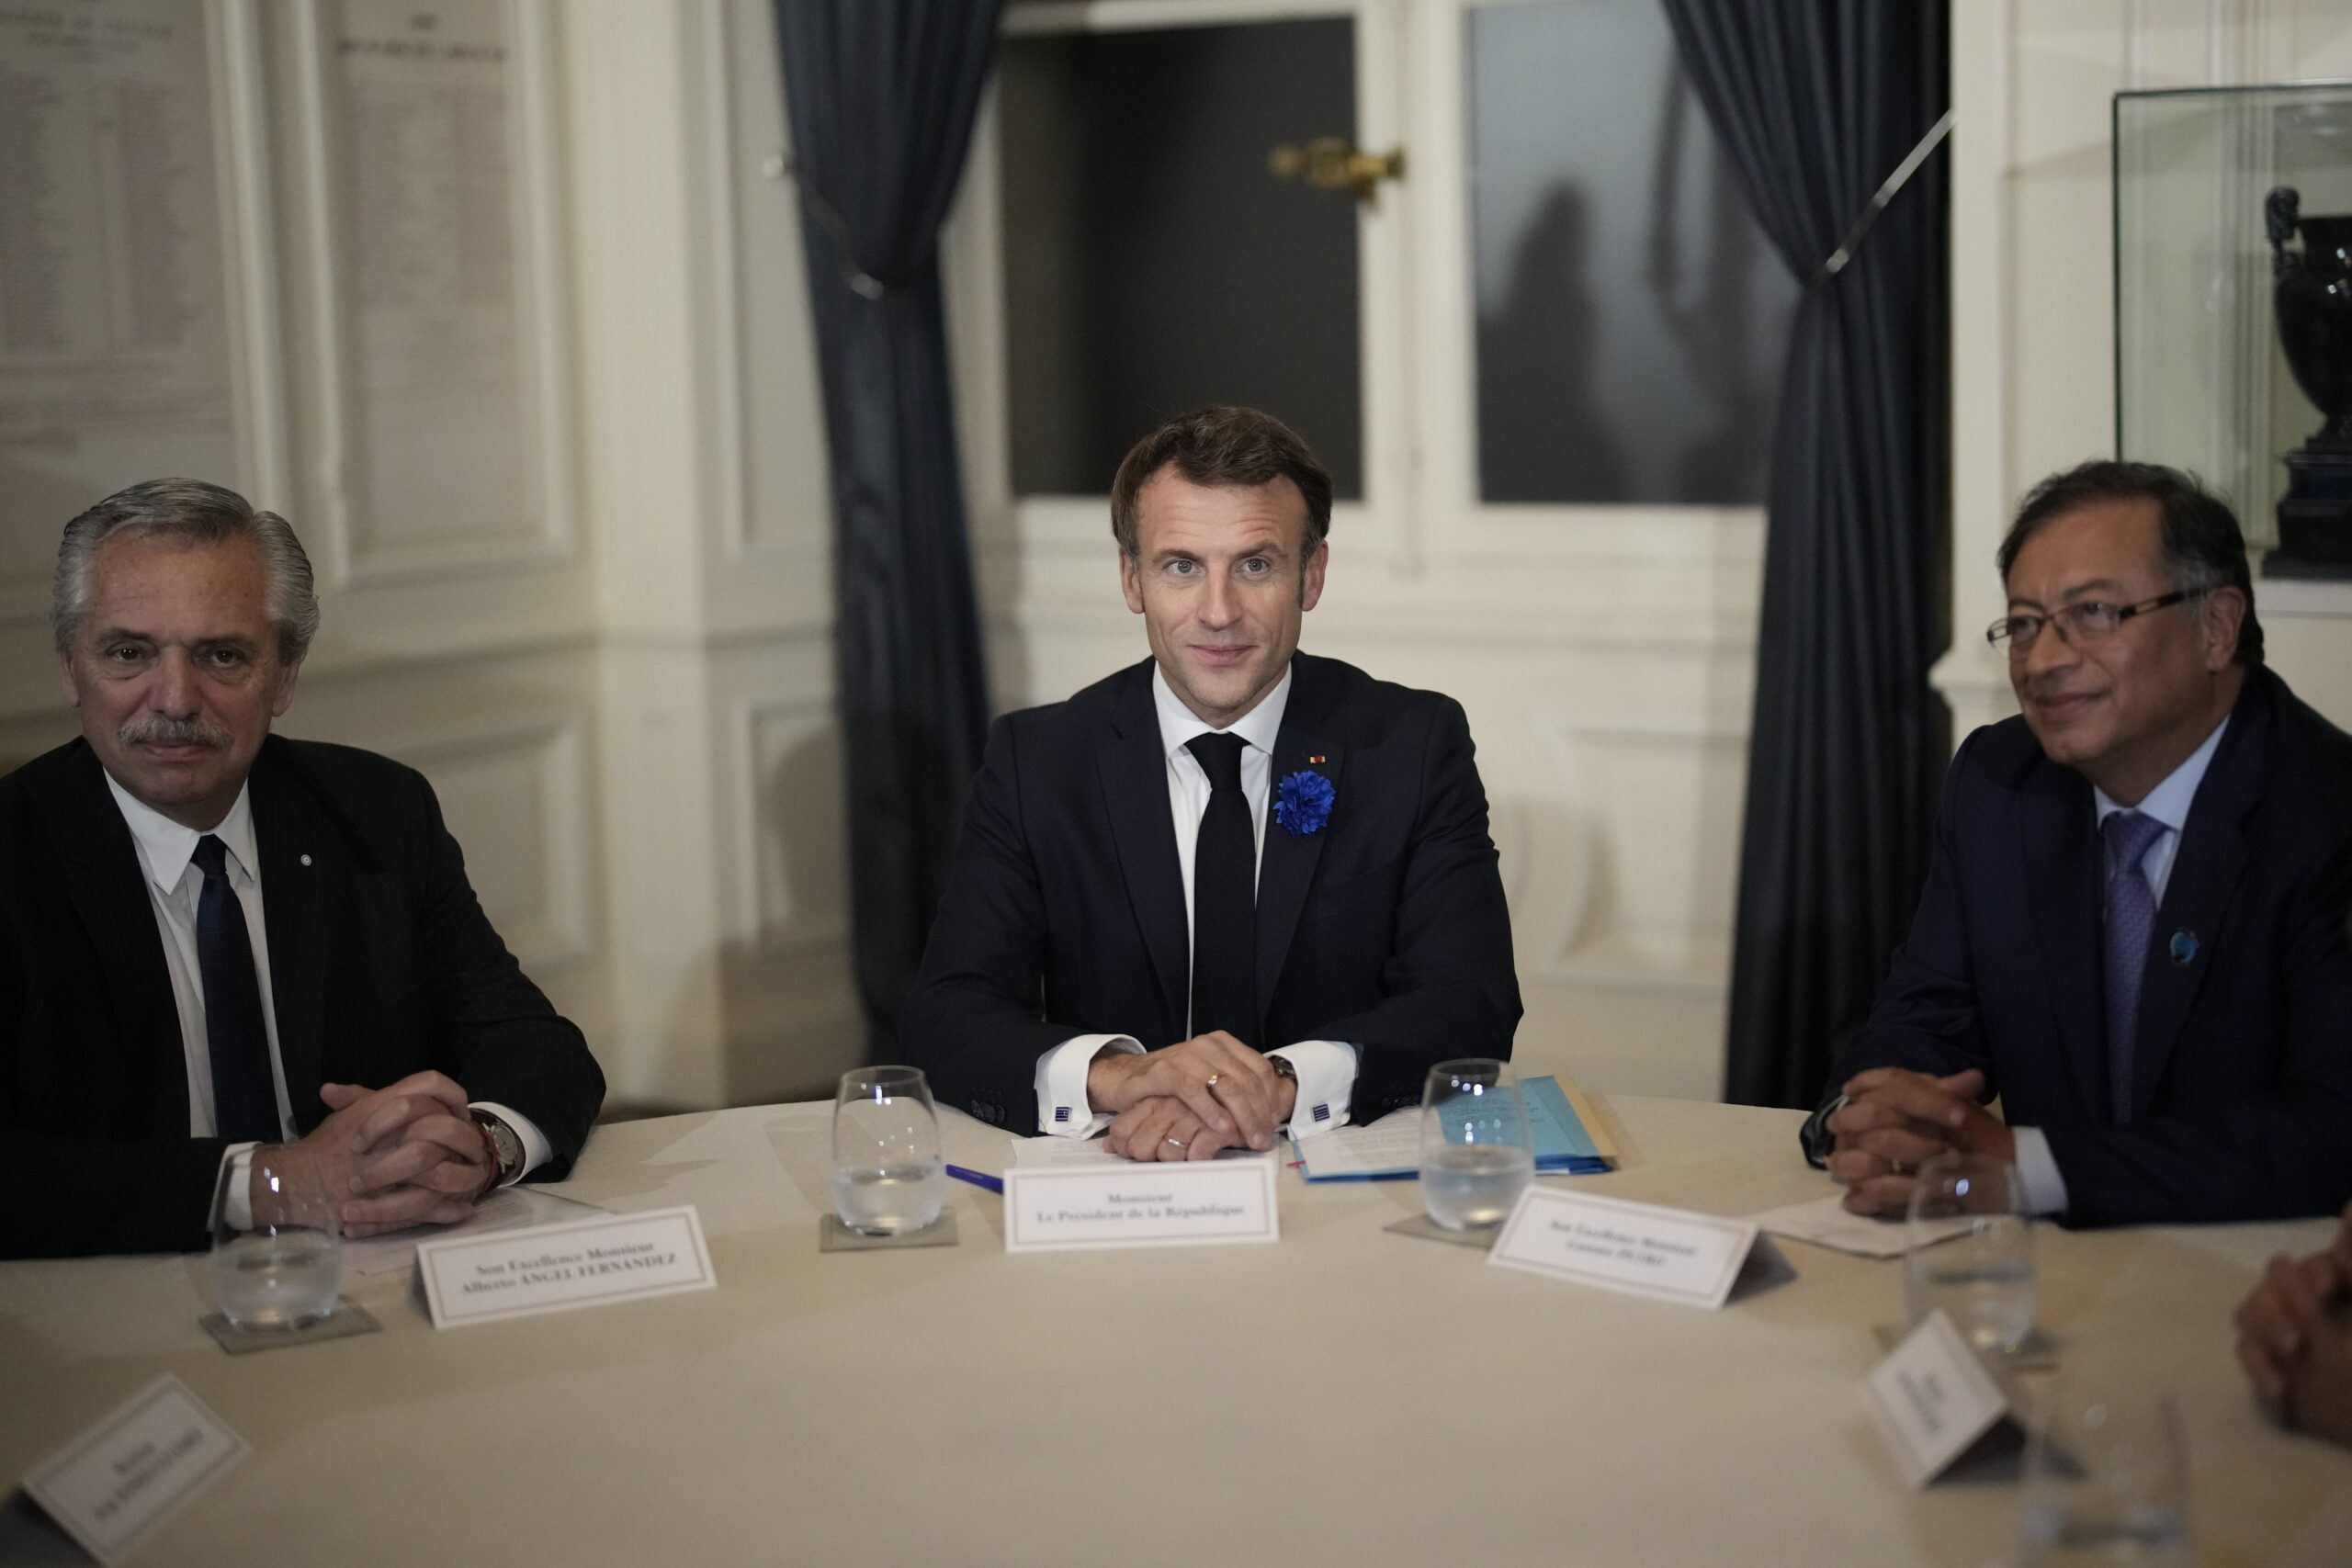 Los presidentes Alberto Fernández de Argentina, Emmanuel Macron de Francia y Gustavo Petro de Colombia, en una reunión por el diálogo en Venezuela. Foto: EFE.